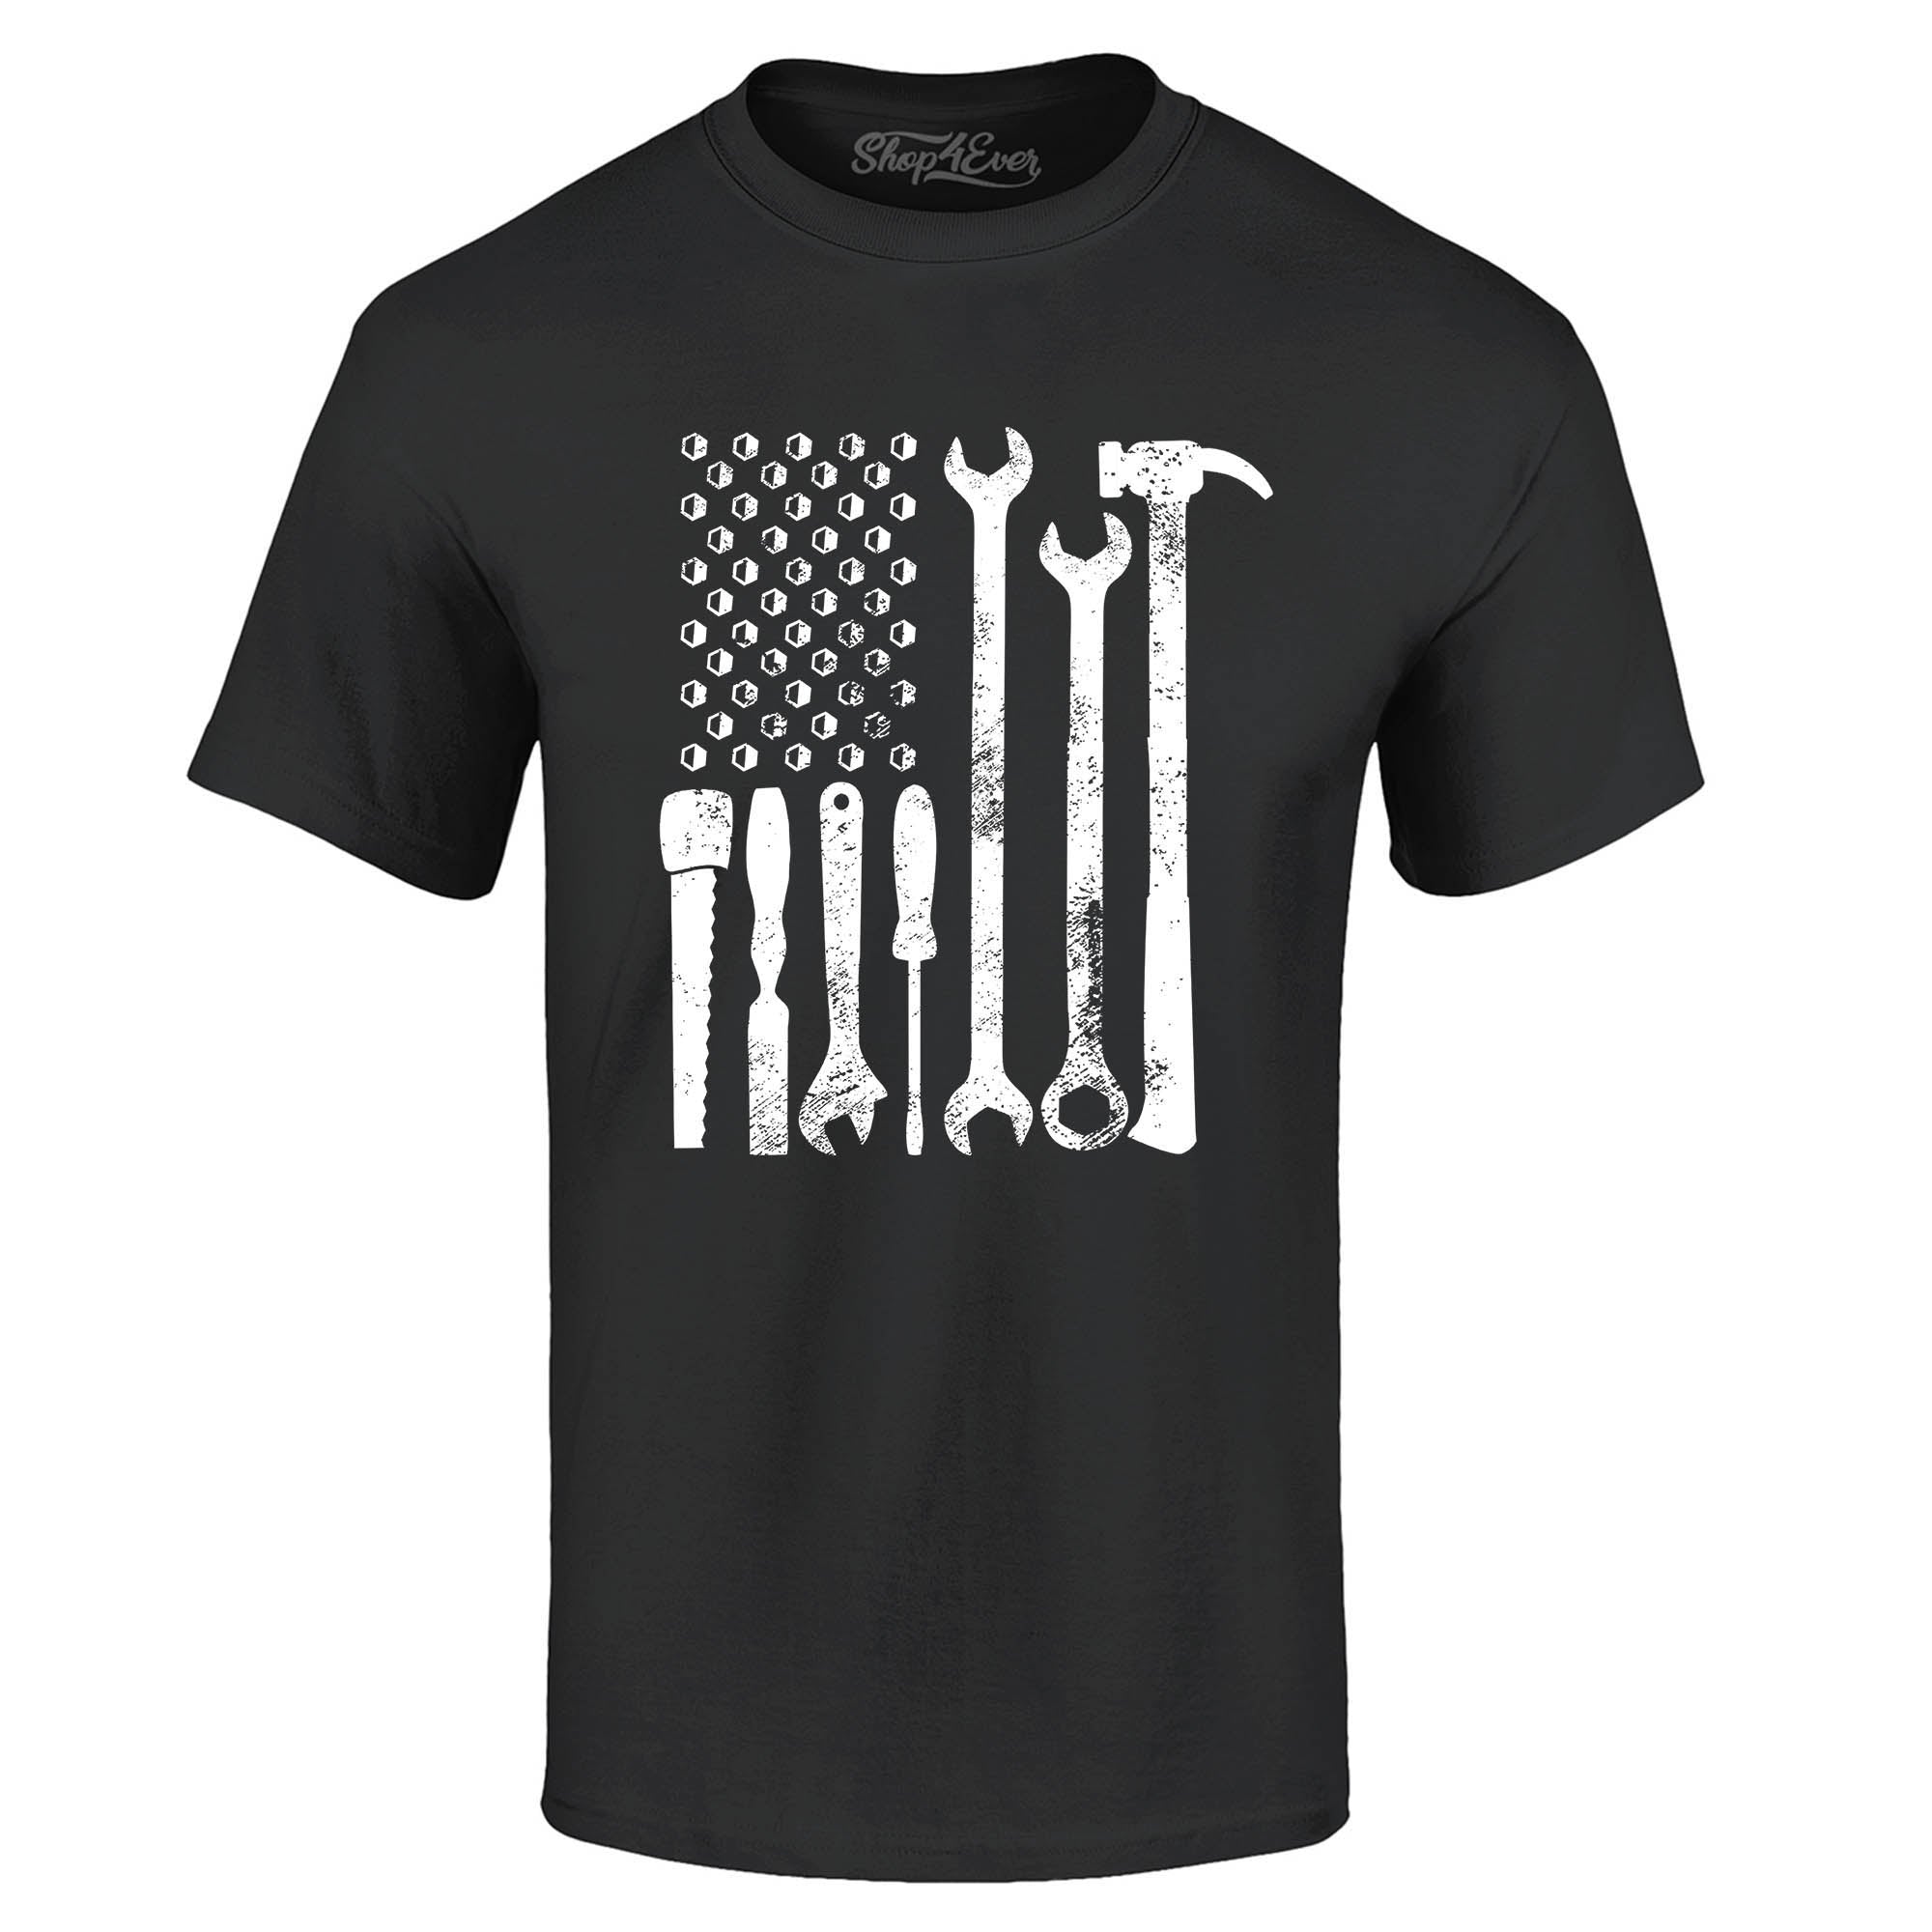 Mechanic Tool American Flag USA T-Shirt